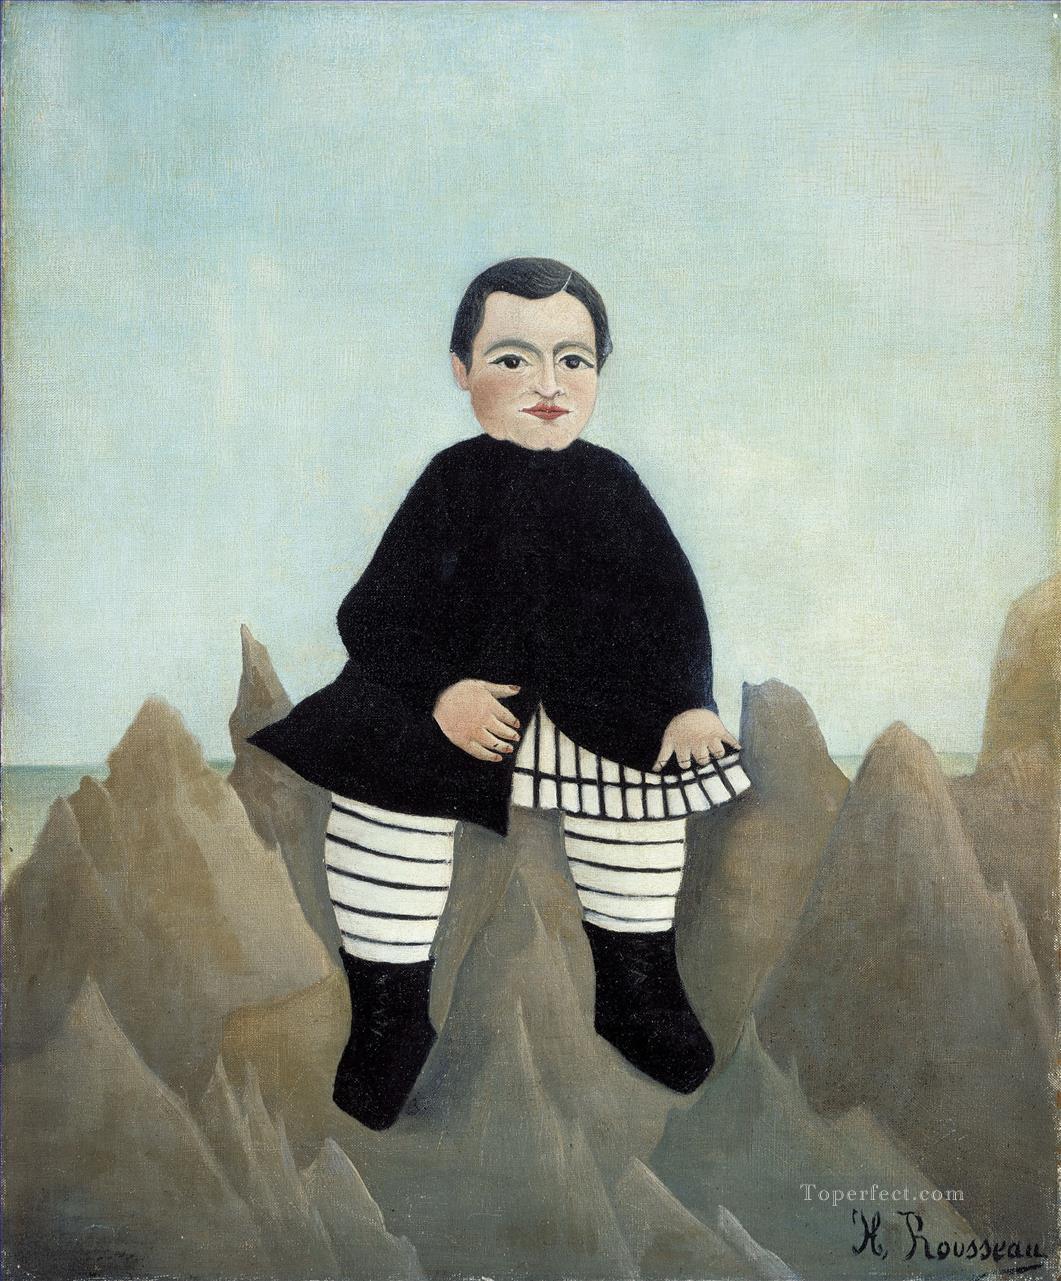 Boy on the Rocks enfant aux rochers Henri Rousseau Post Impressionism Naive Primitivism Oil Paintings